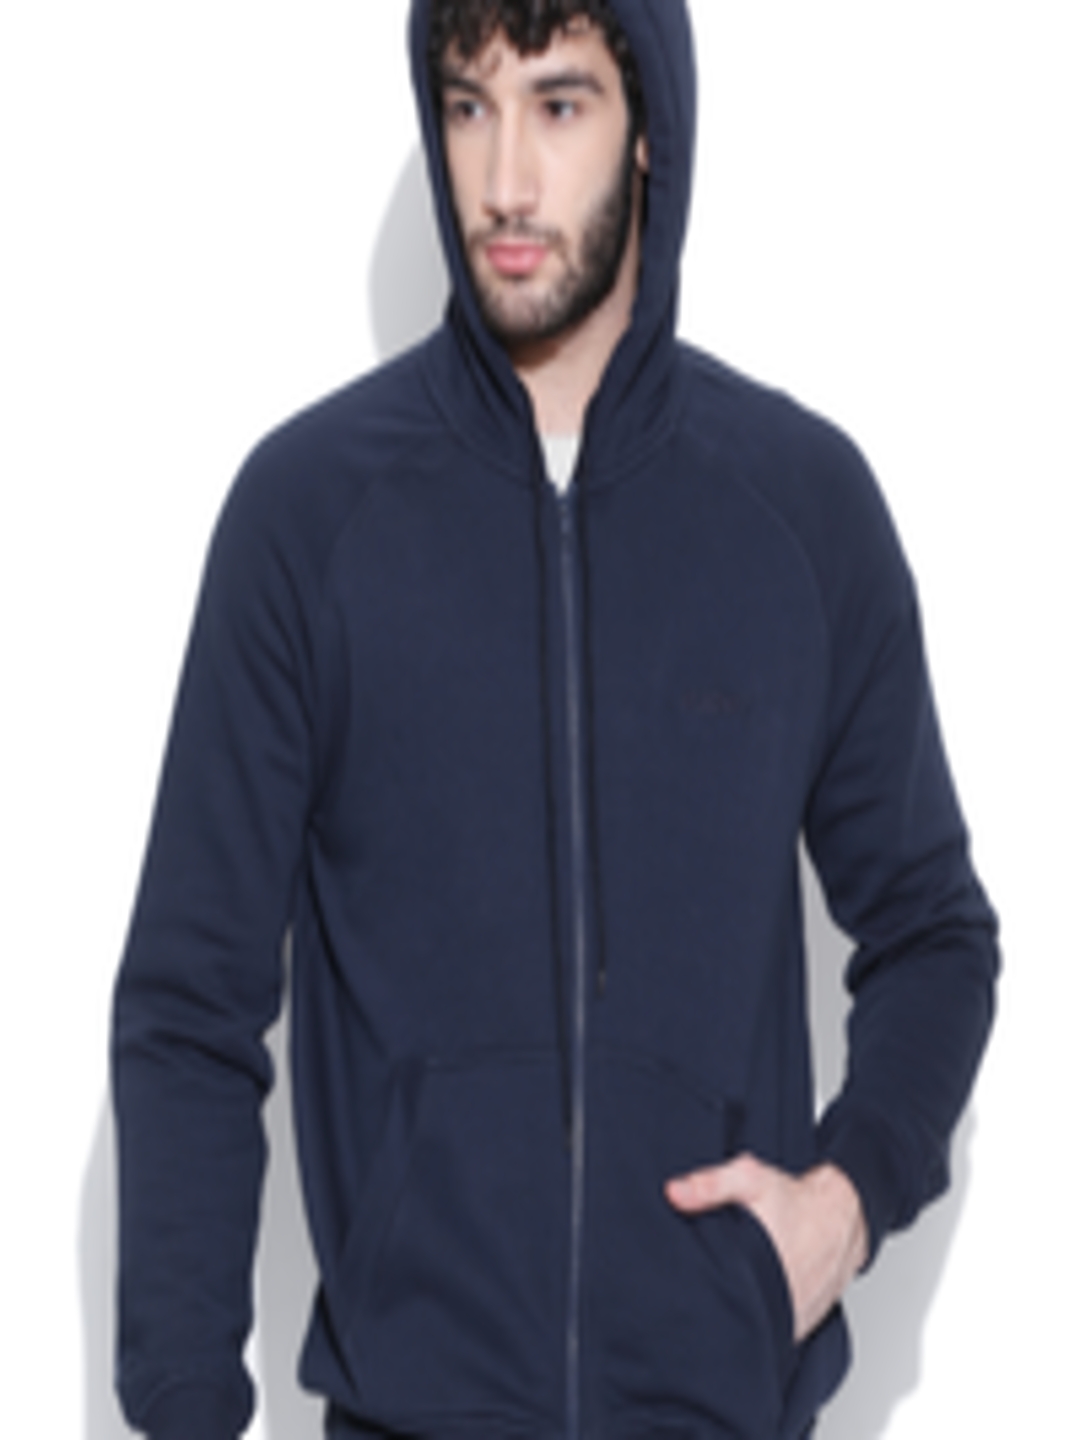 Buy Wildcraft Navy Hooded Sweatshirt 14 - Sweatshirts for Men 526943 ...